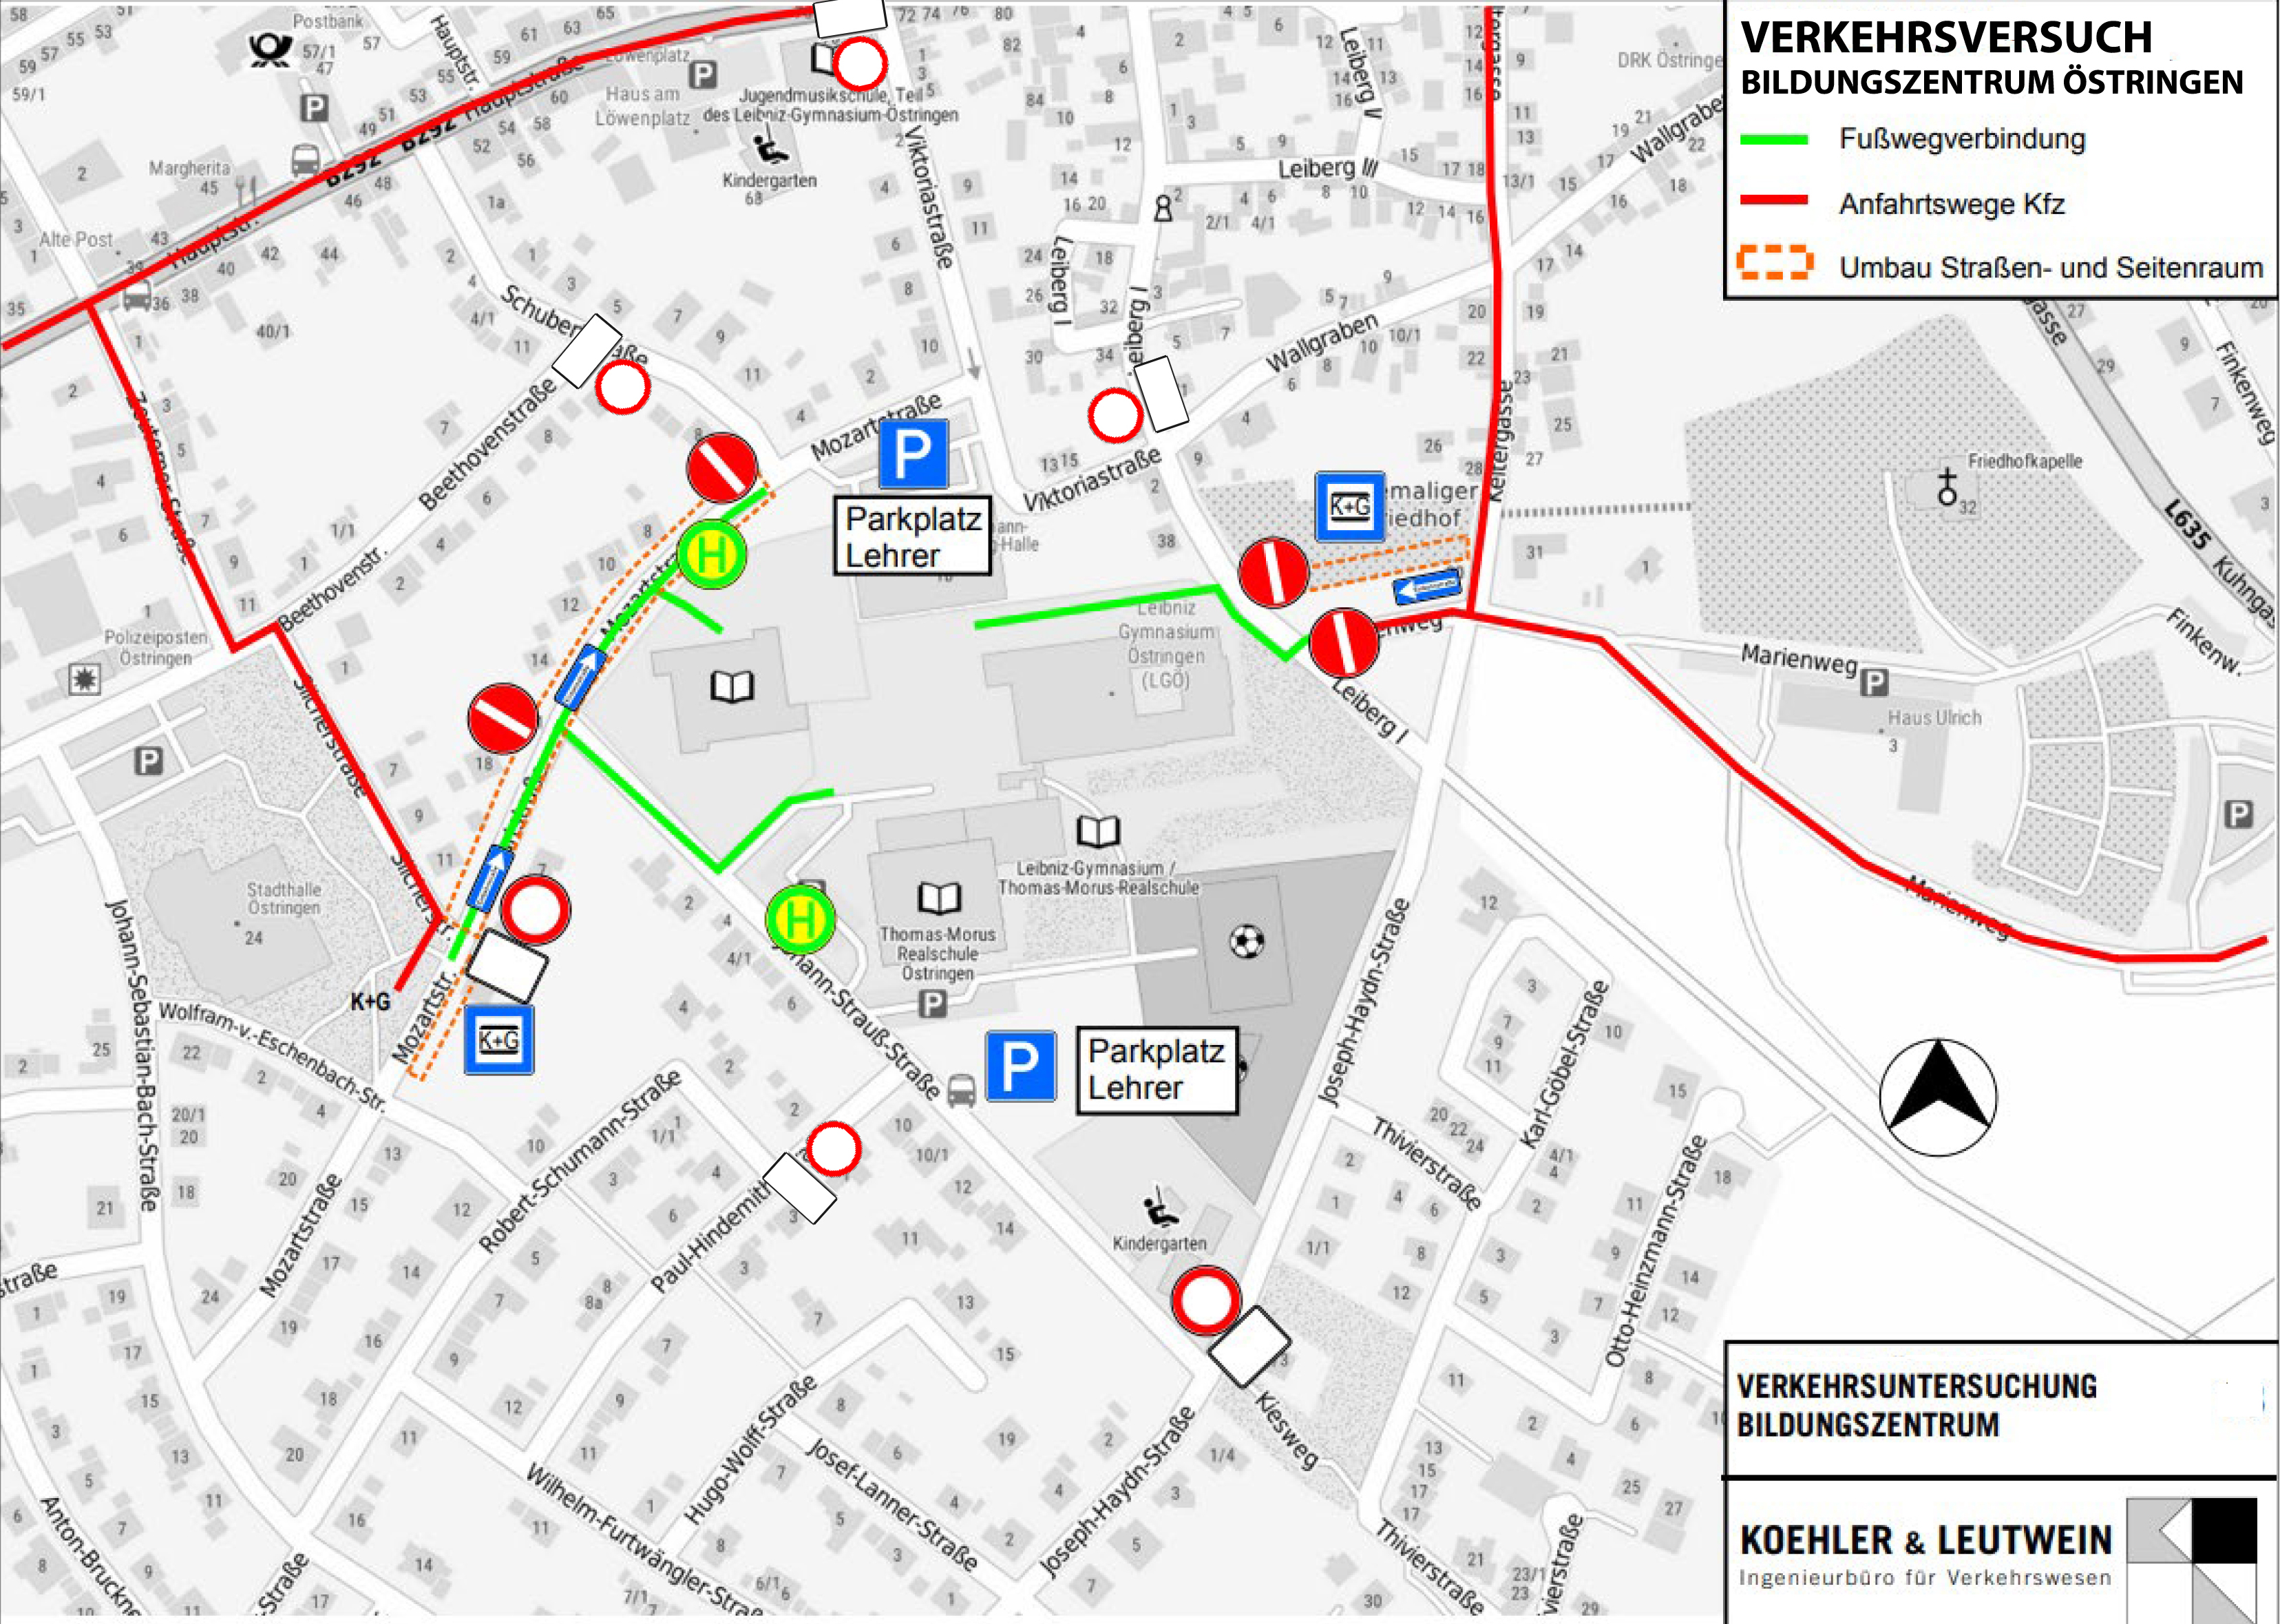  Verkehrsversuch am Bildungszentrum Östringen - Übersichtskarte 